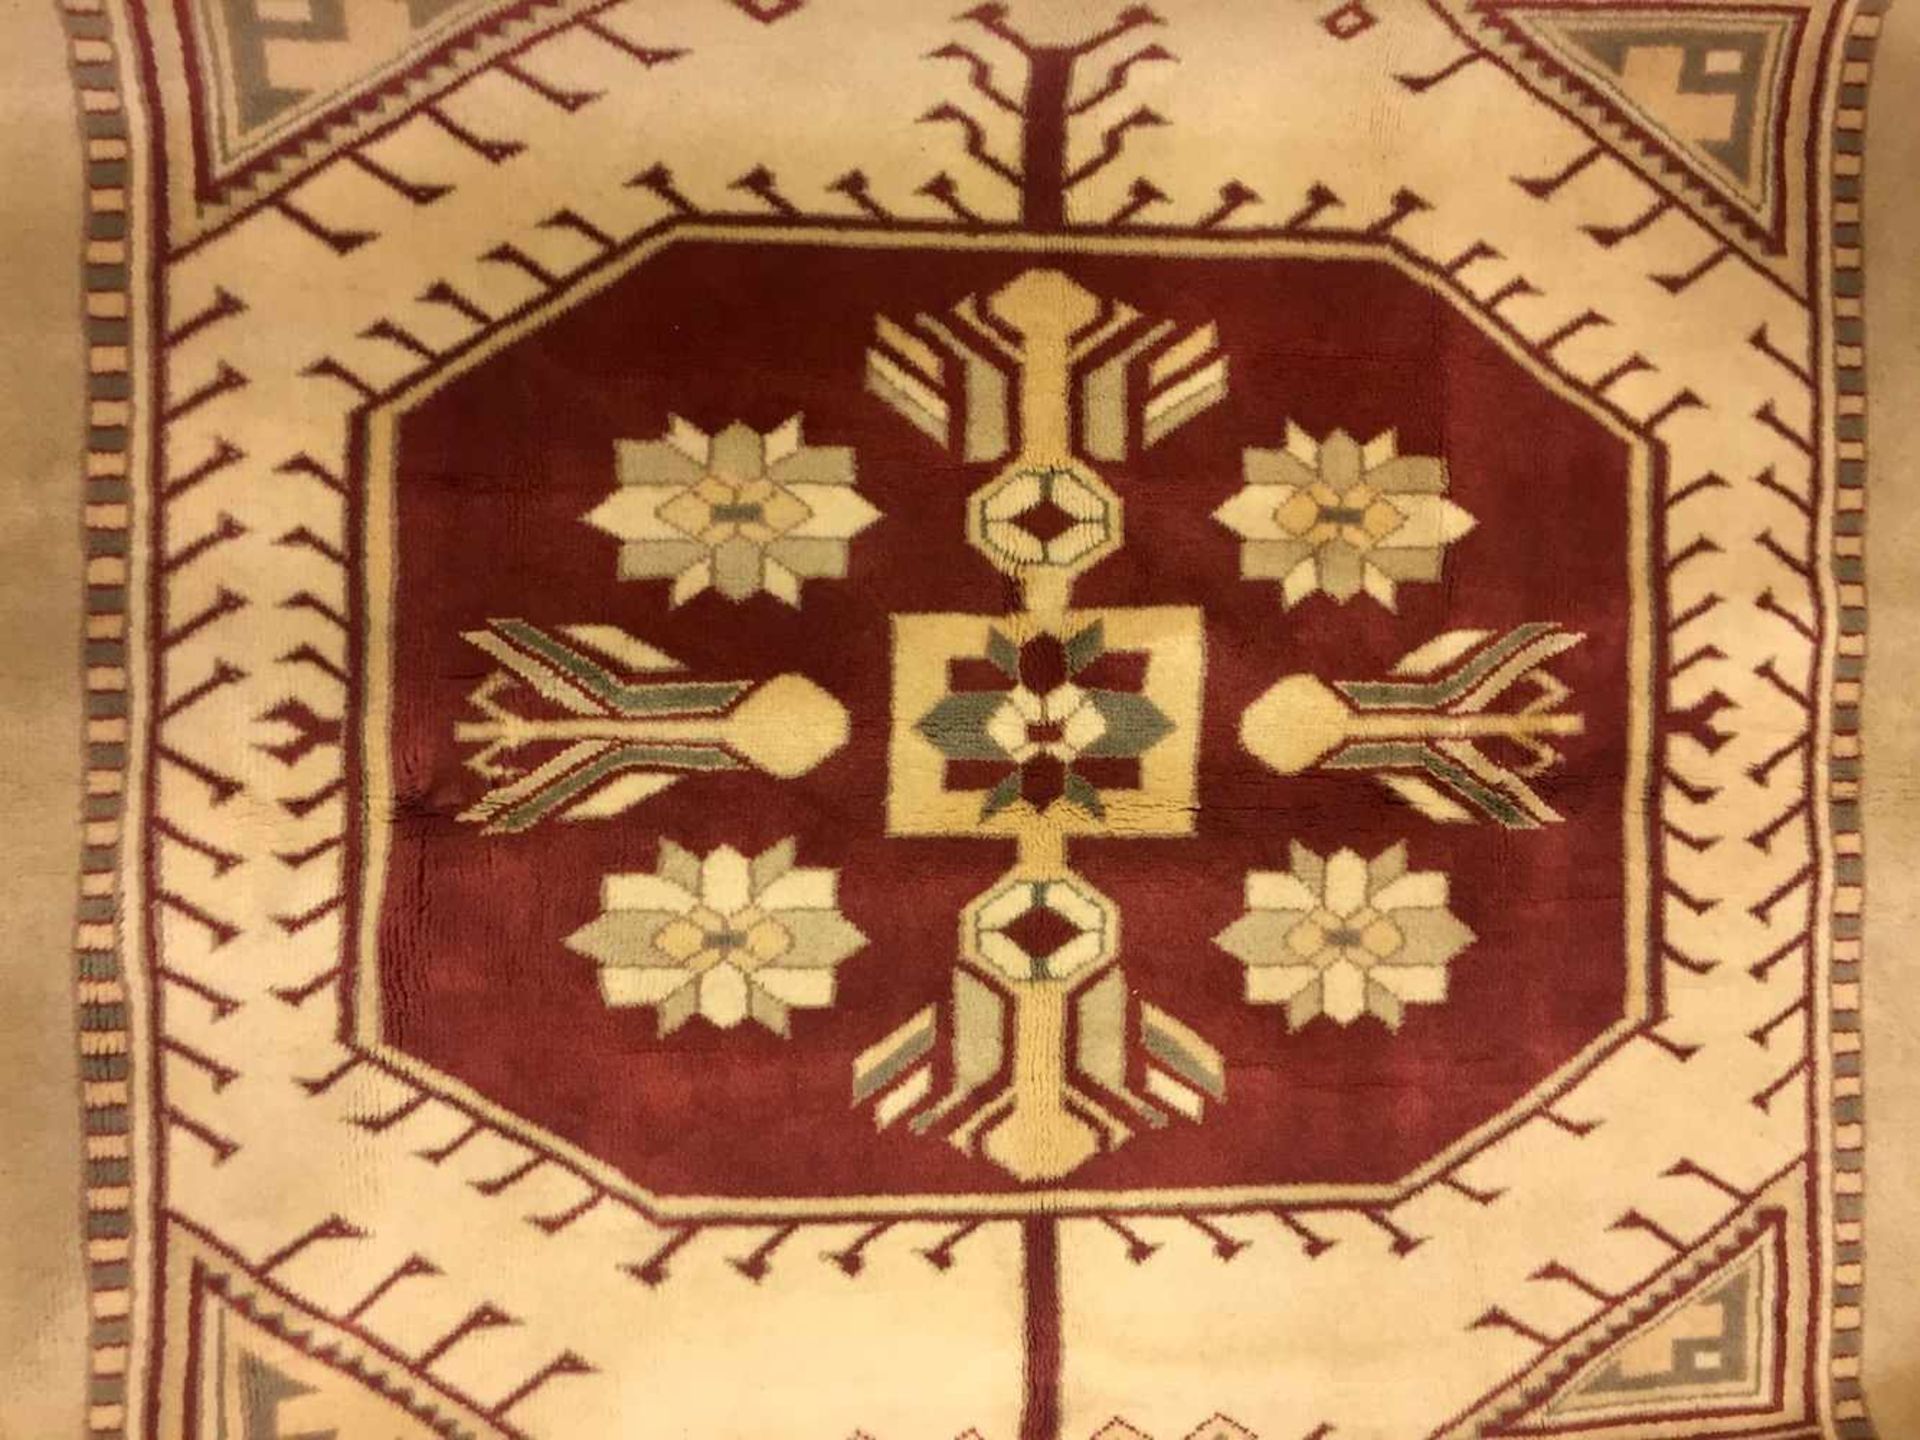 Großer eleganter Teppich: Handgeknüpft, 1,95 x 2,95 m.Wolle auf Wolle, Fransenkanten, creme-farbener